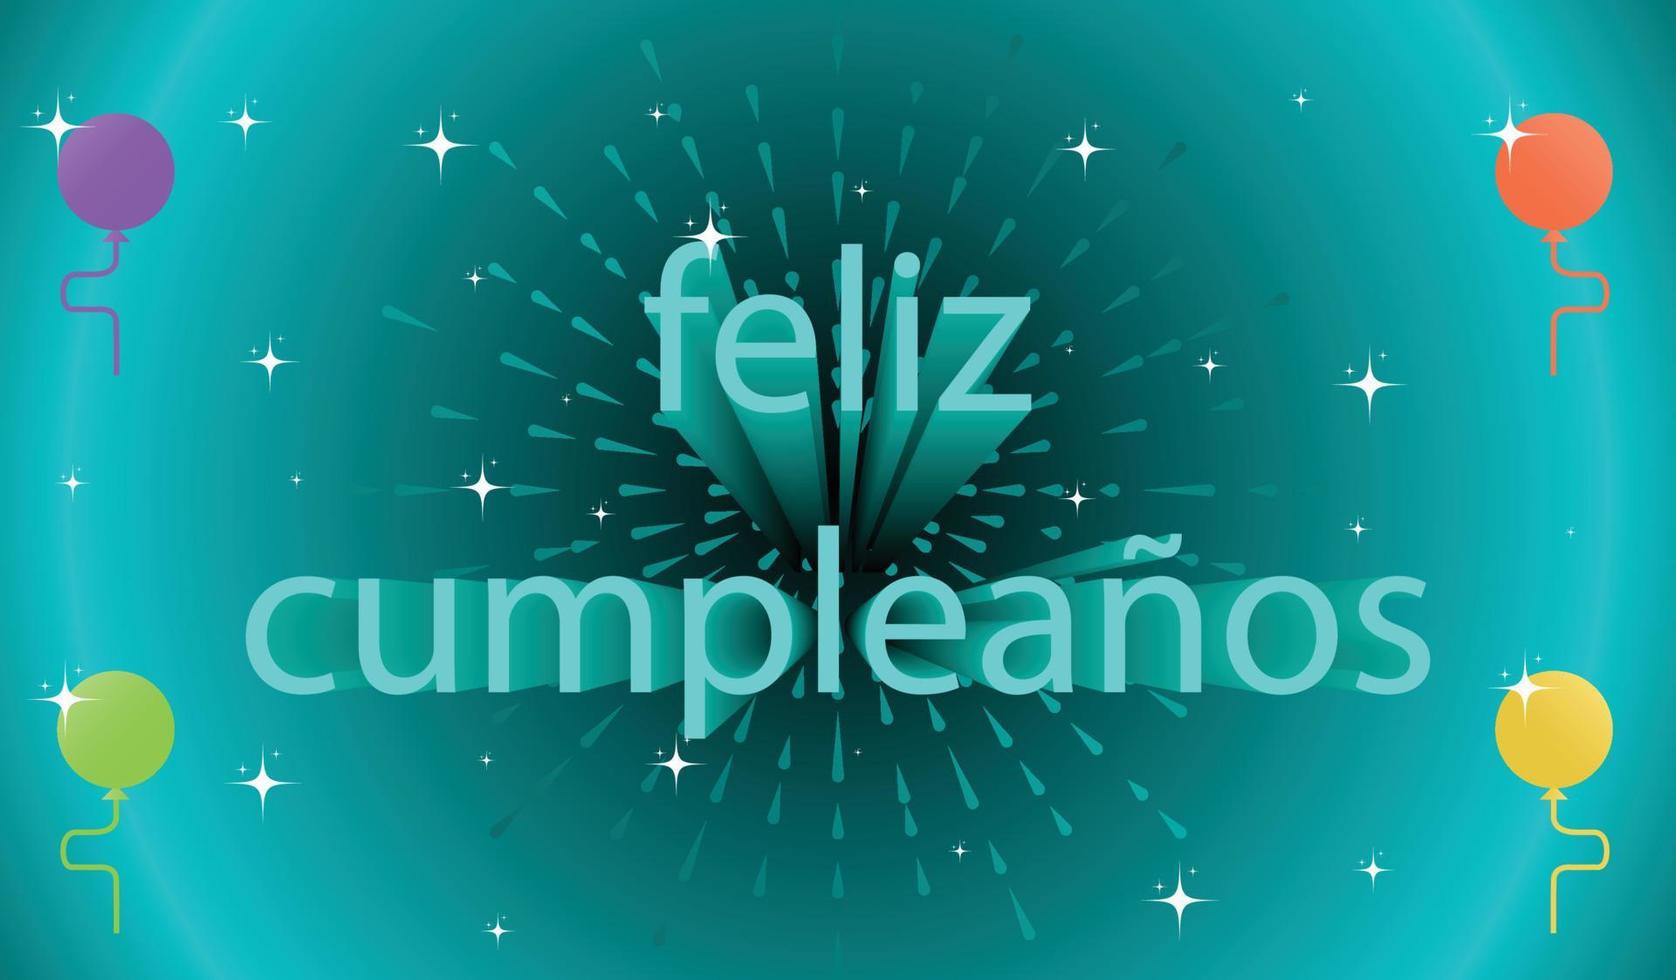 feliz cumpleaños en español, feliz cumpleanos ilustración con texto rápido para plantillas de tarjetas de felicitación o invitación. vector